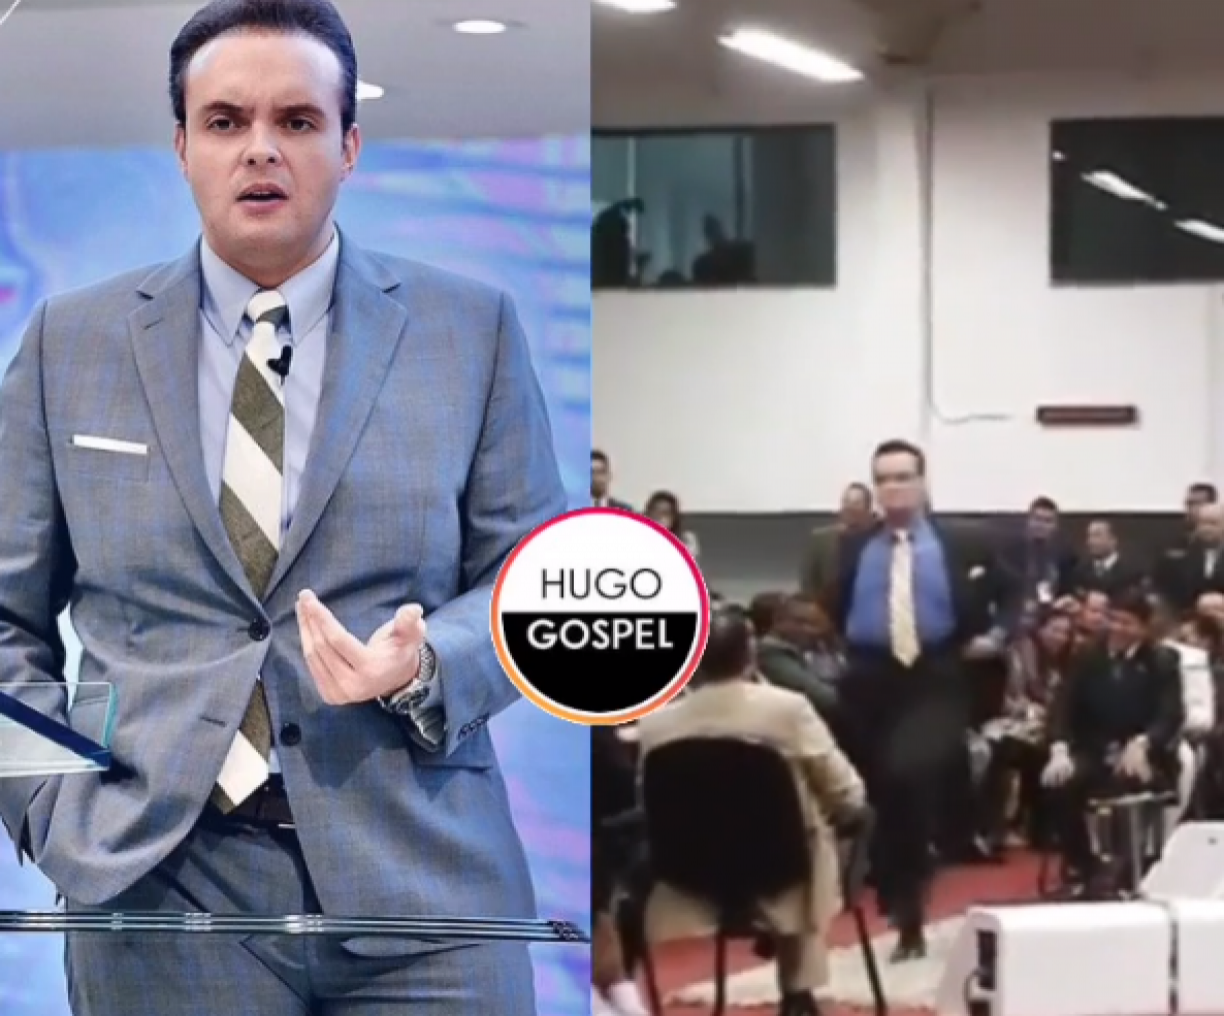 VÍDEO: Pastor Manoel Ferreira 'requebra' em cima de púlpito e